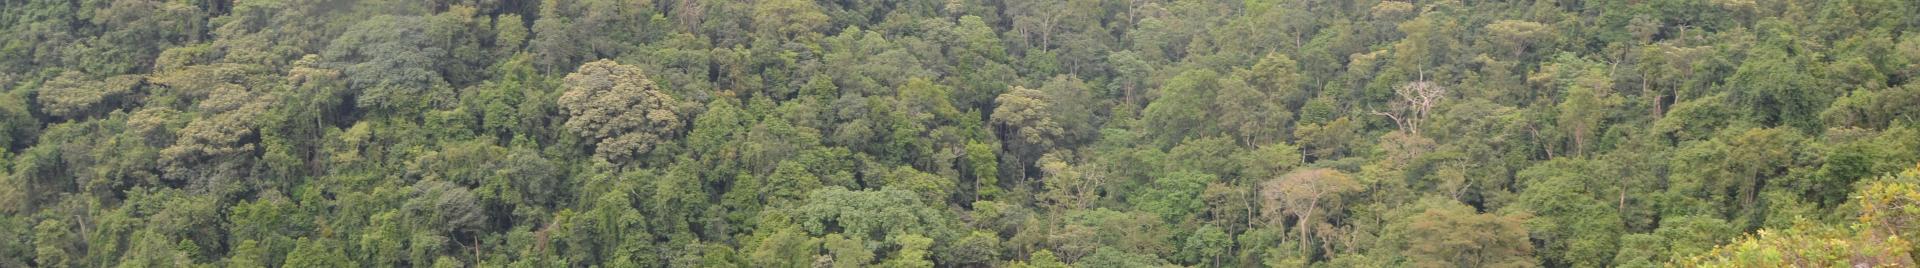 Uganda forests